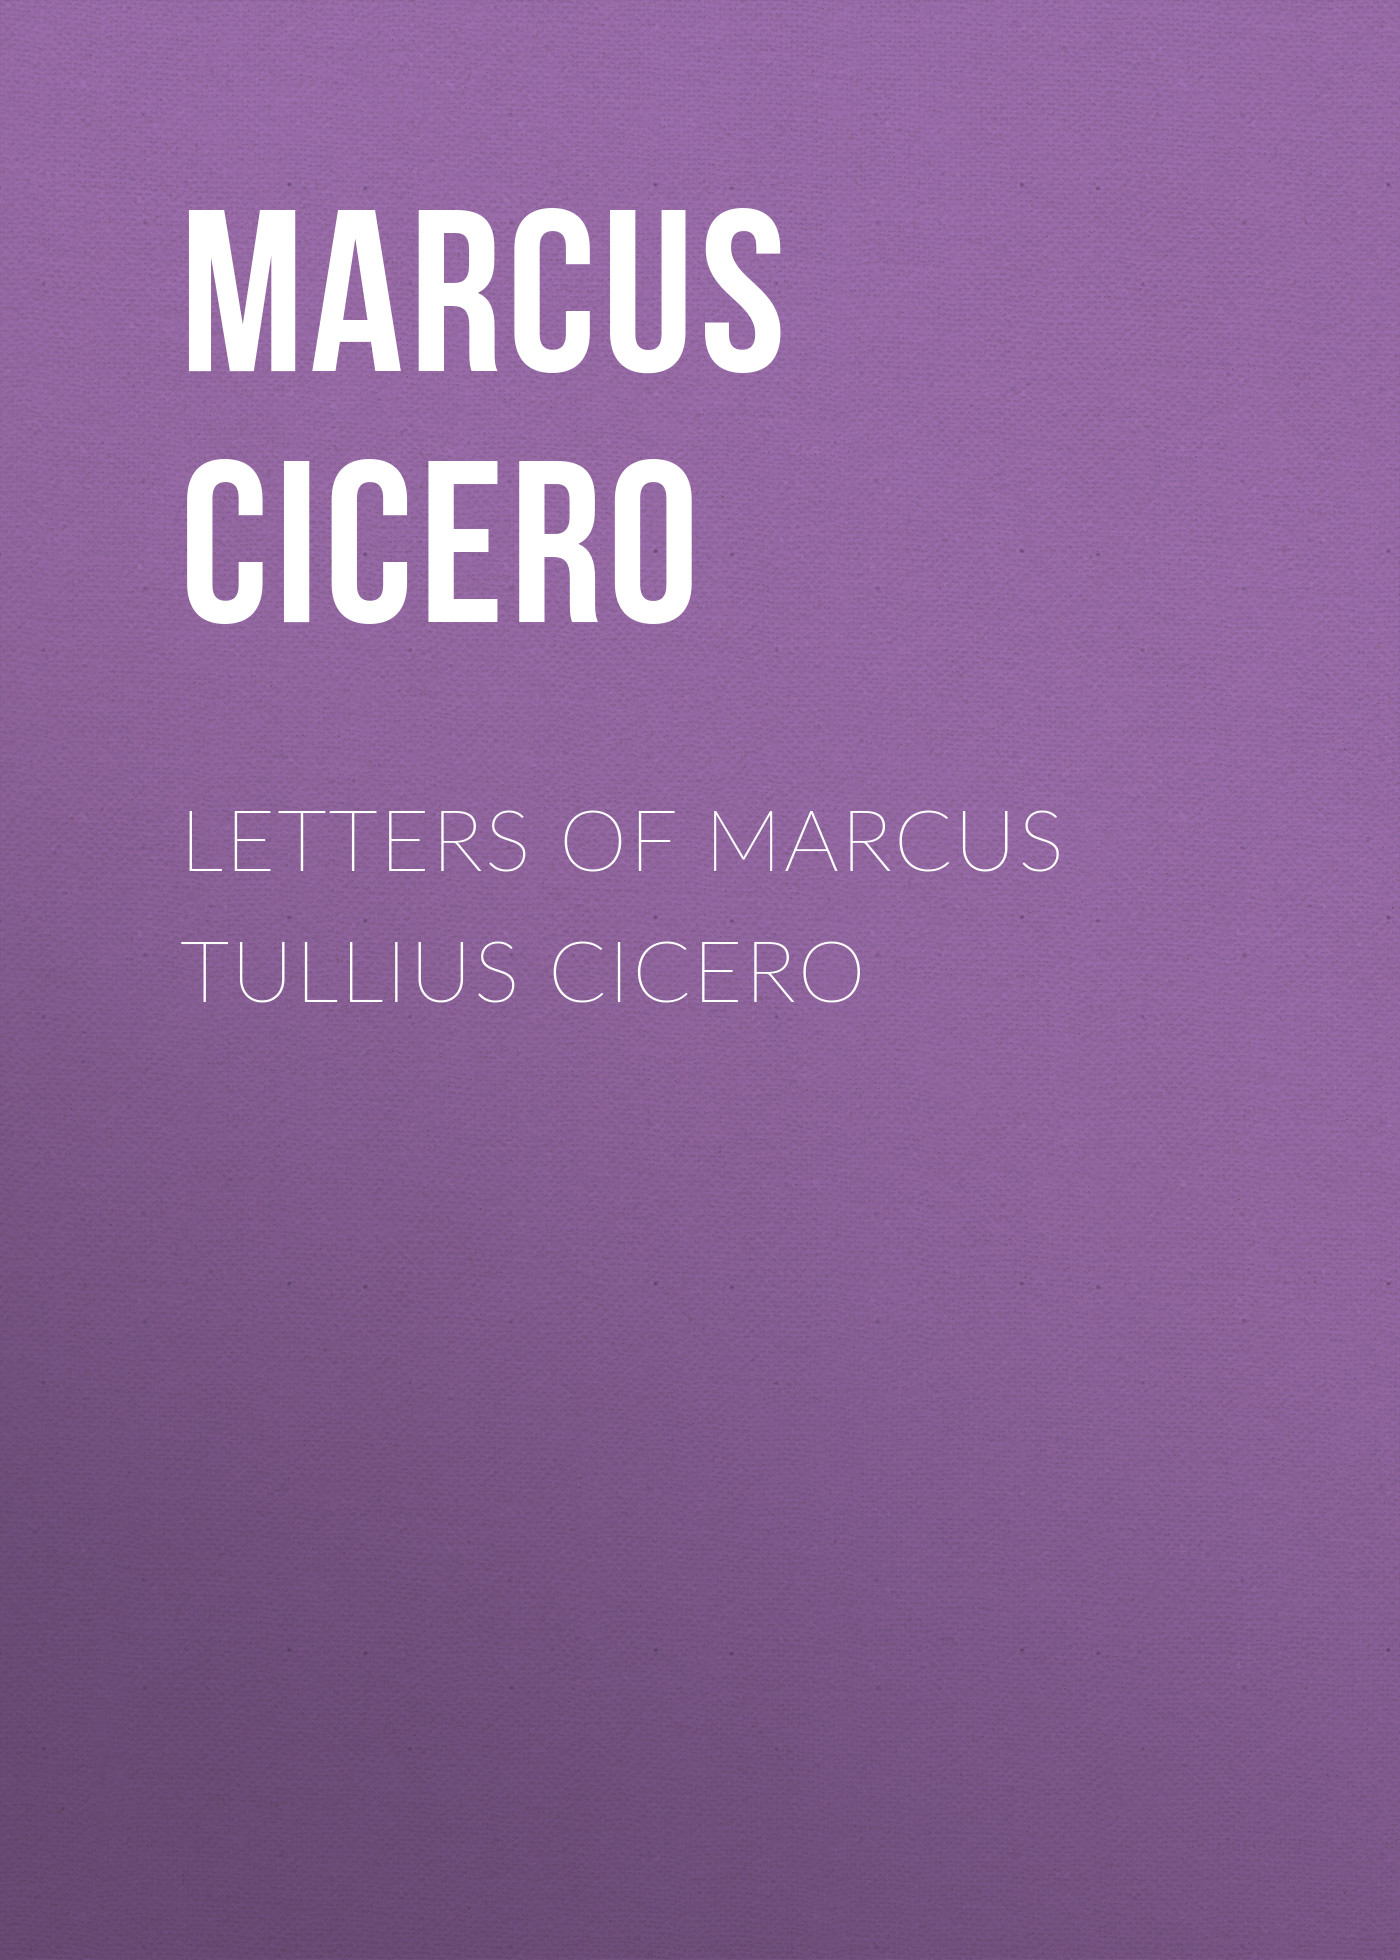 Letters of Marcus Tullius Cicero